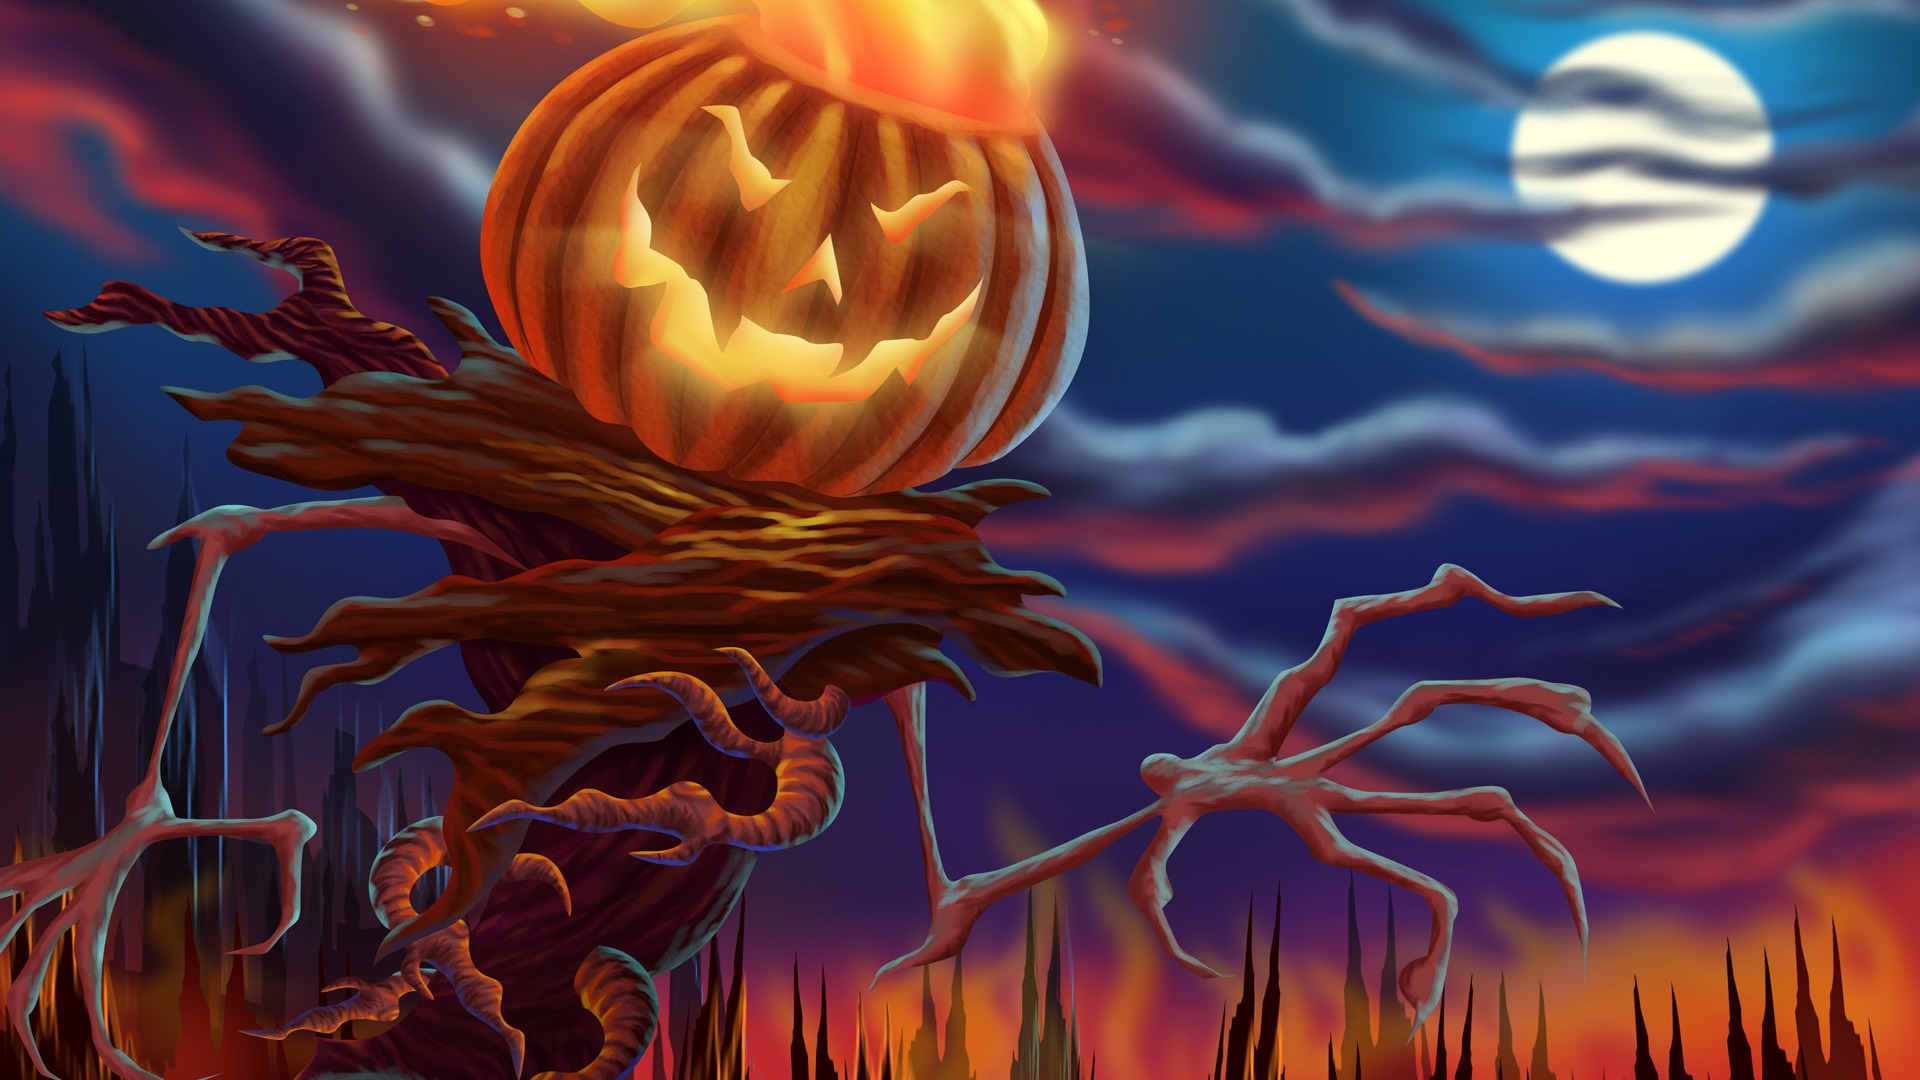 Fondos de Halloween temáticos (3) #1 - 1920x1080